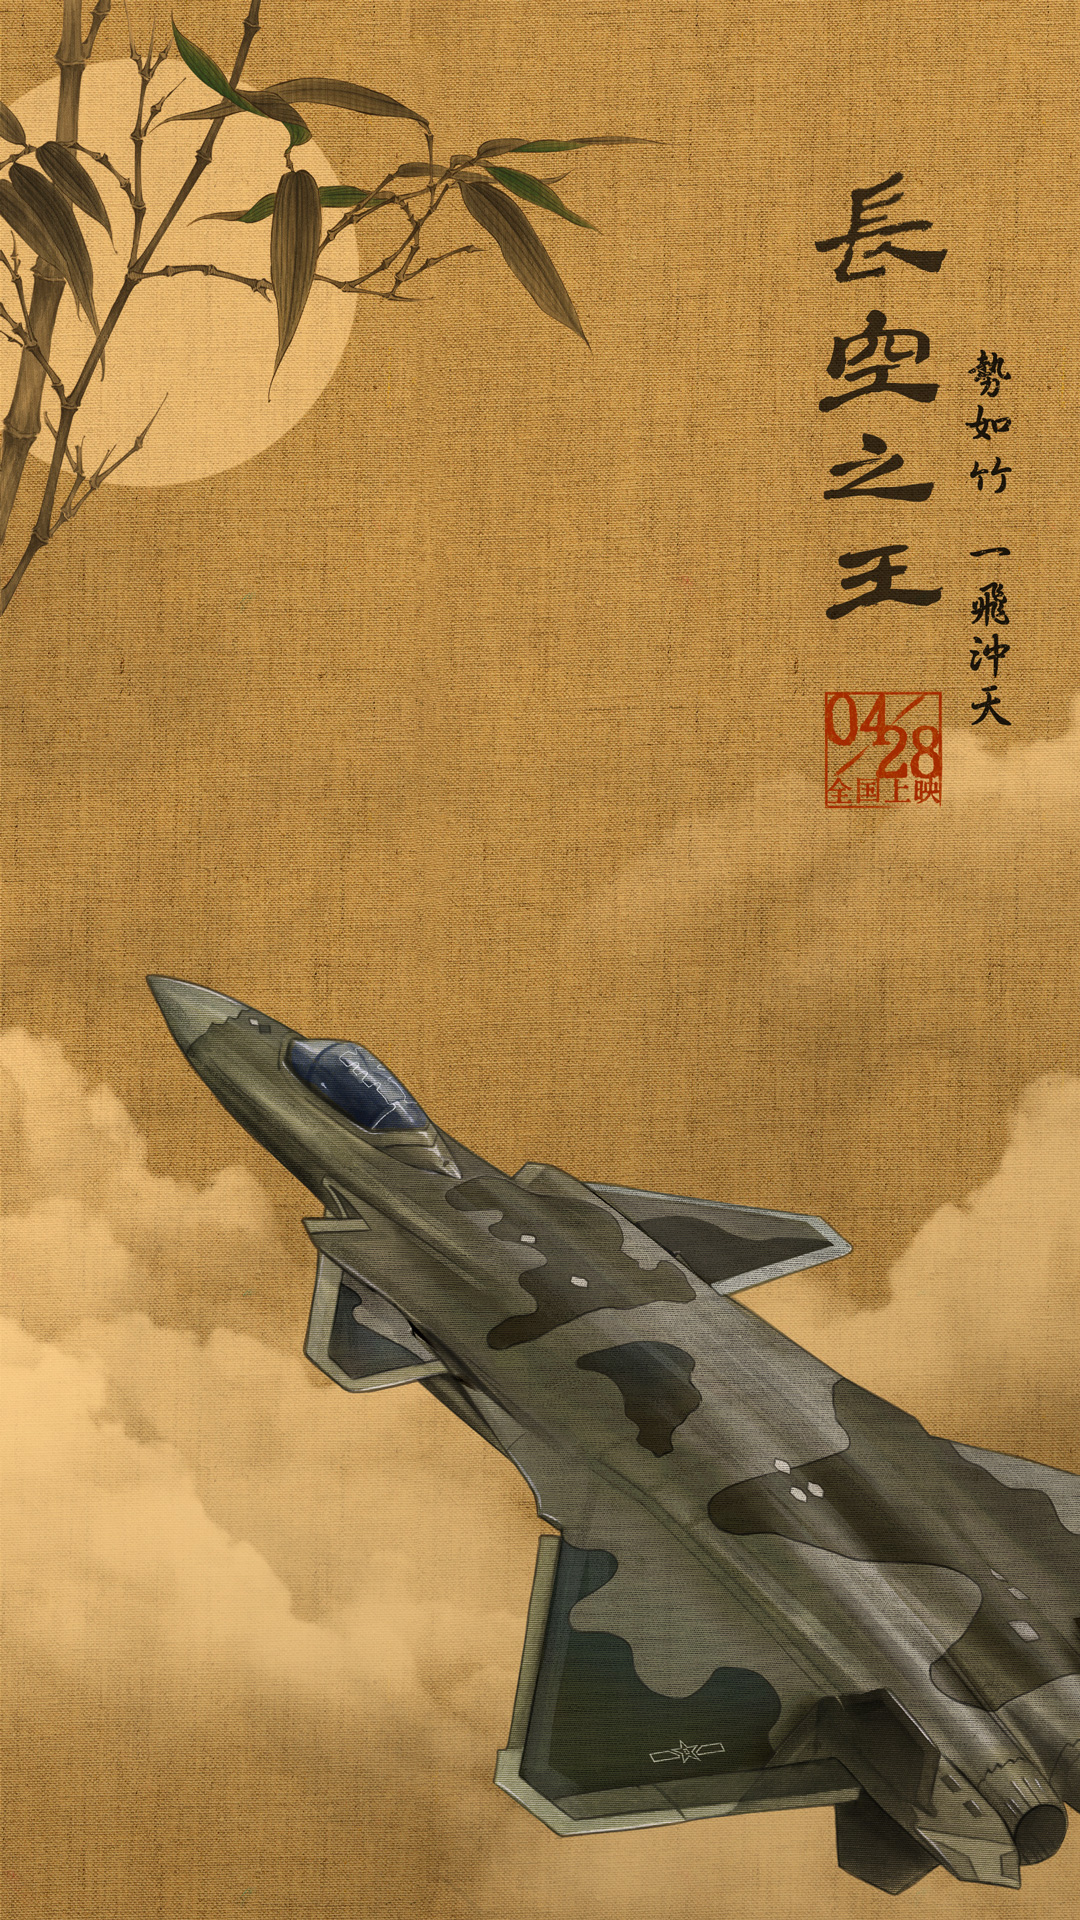 1、电影《长空之王》国风版海报 歼-20.jpg